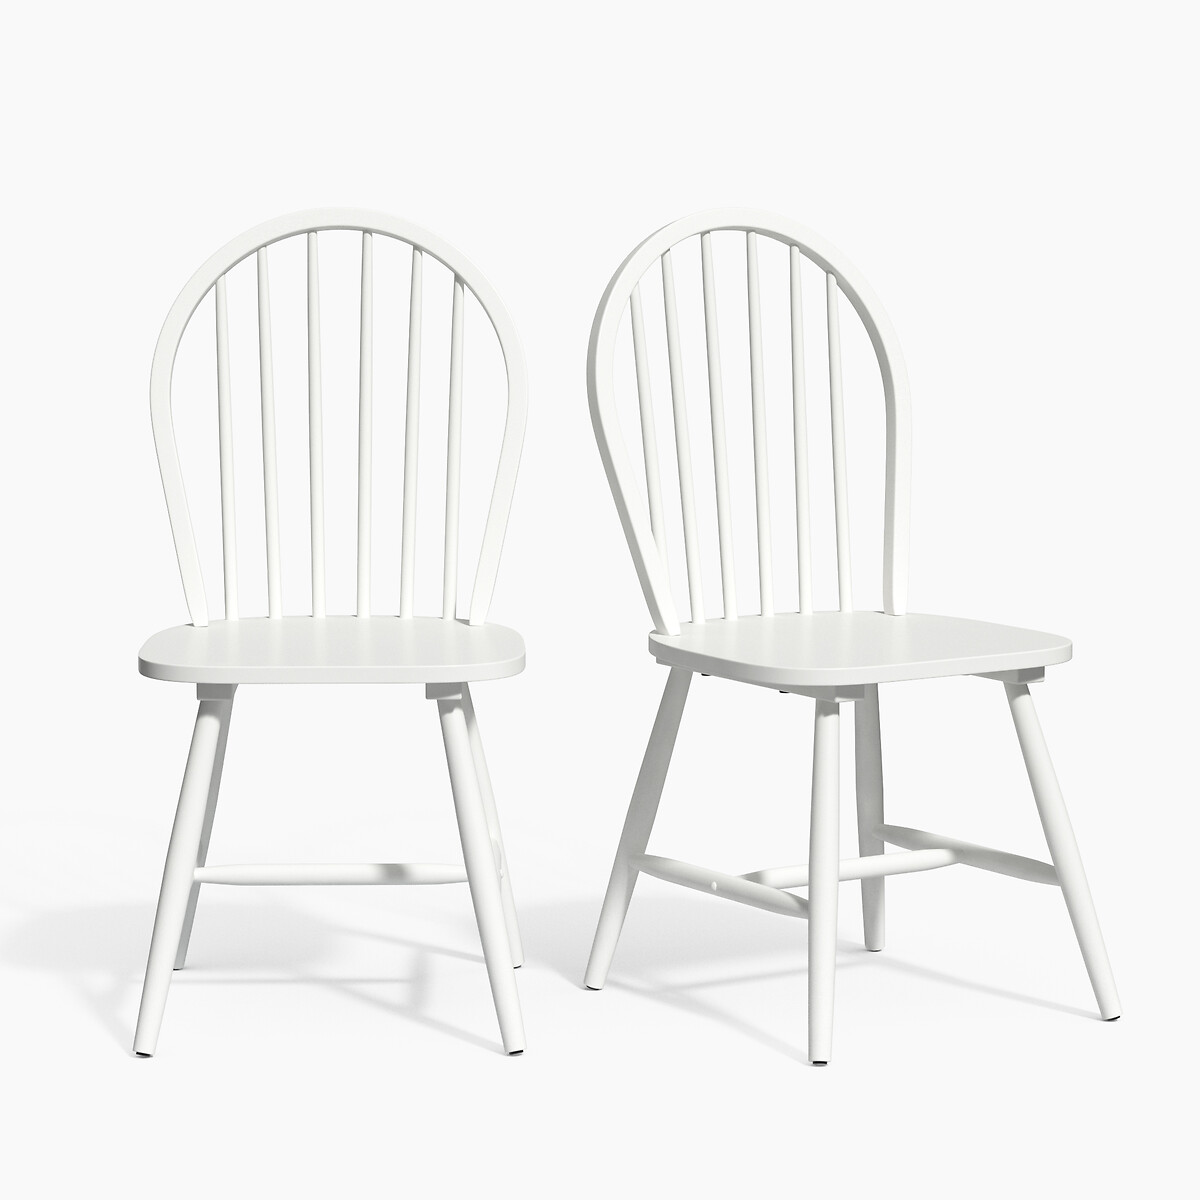 dek rekken getuige Set van 2 stoelen met spijlen, windsor La Redoute Interieurs | La Redoute